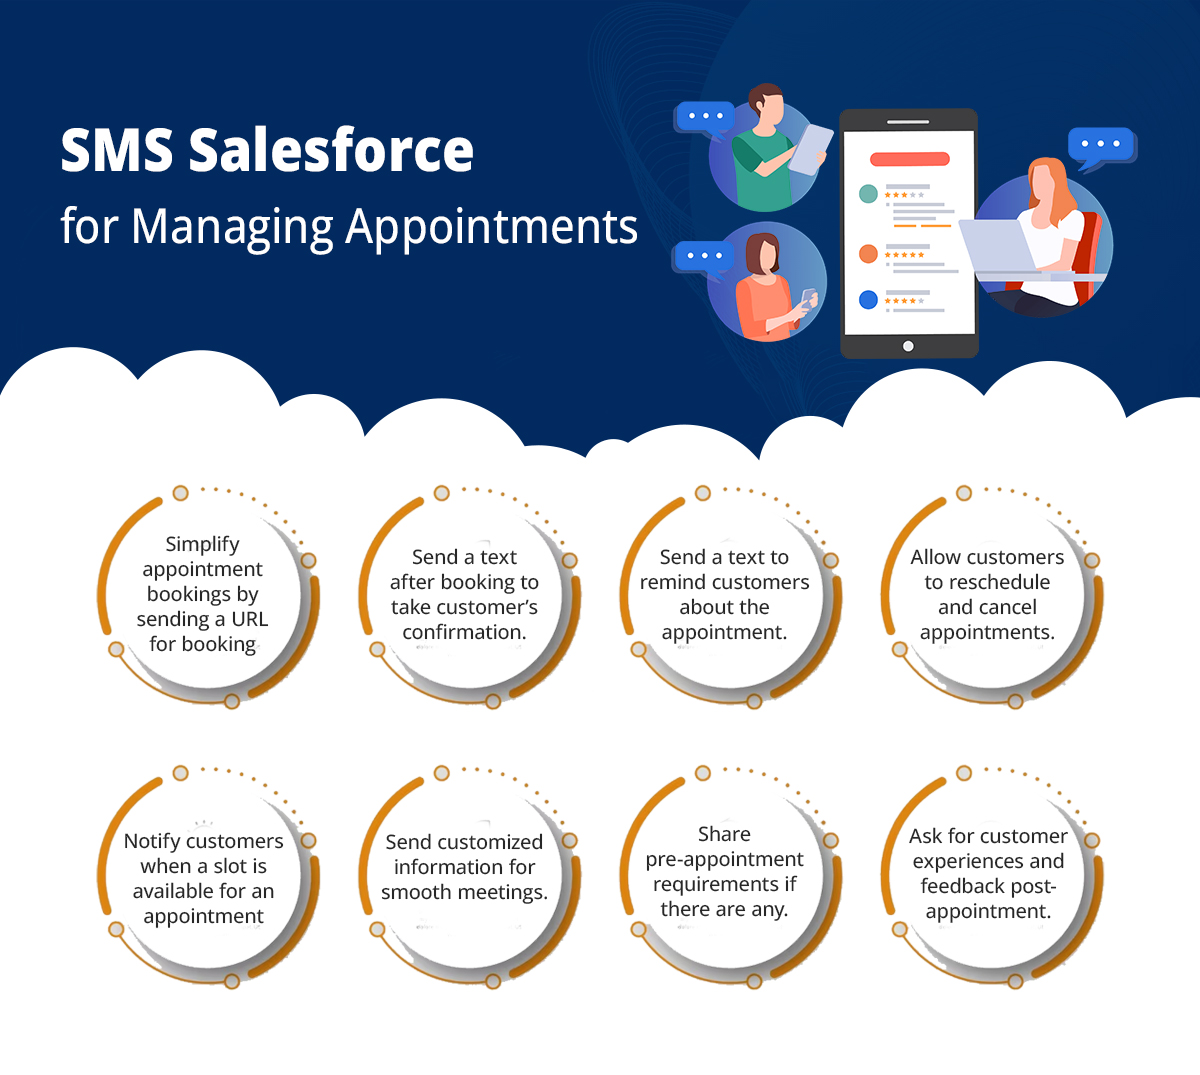 Salesforce SMS